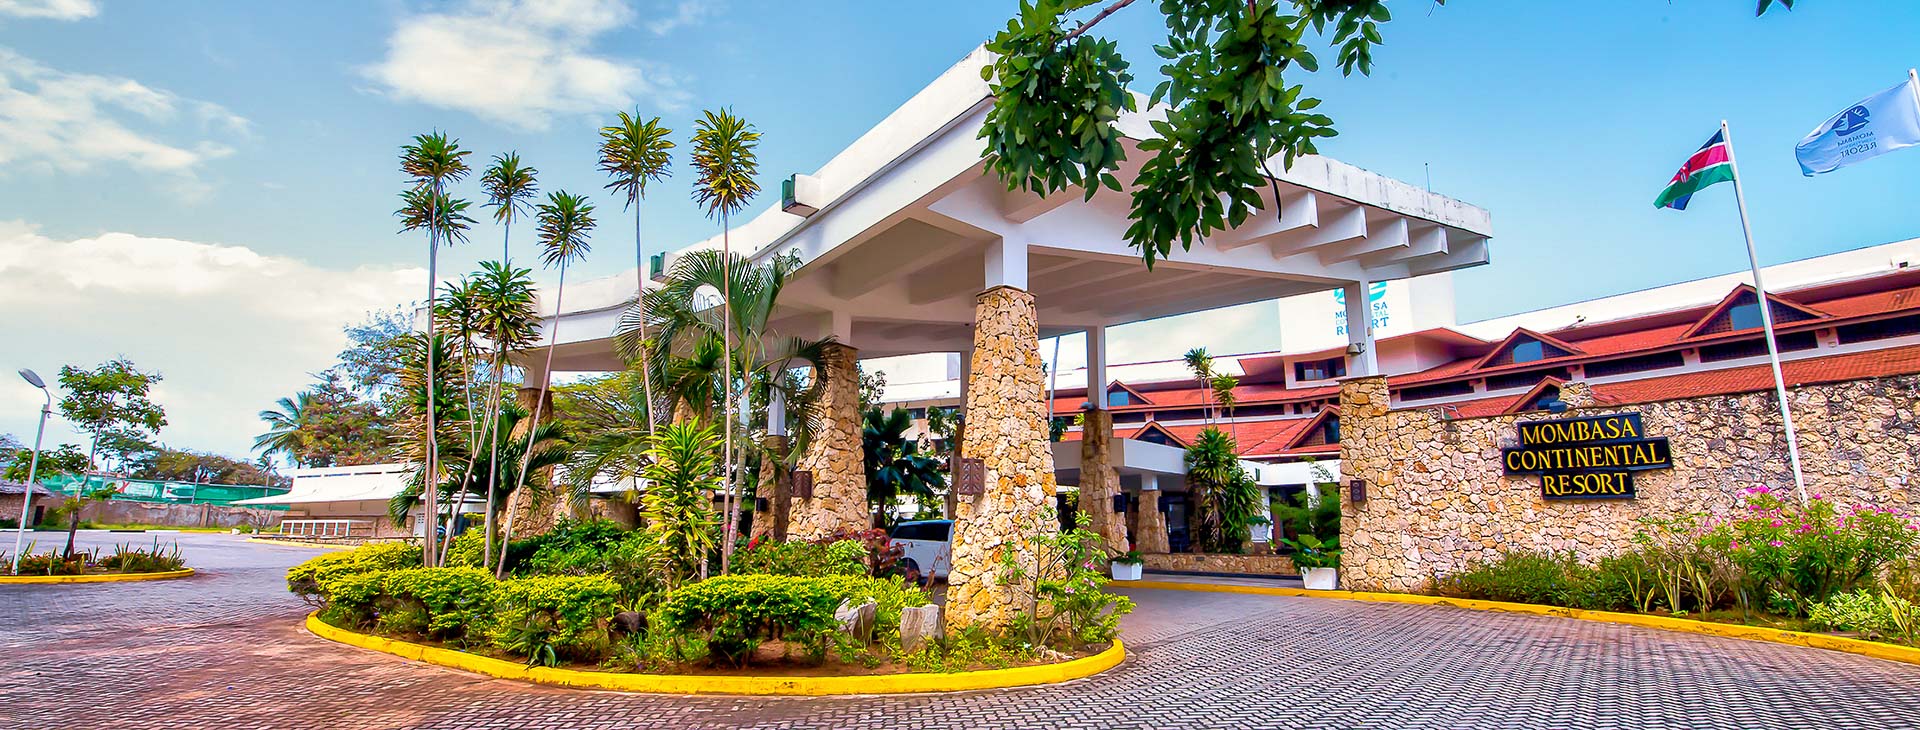 Mombasa Continental Resort Obrázek10